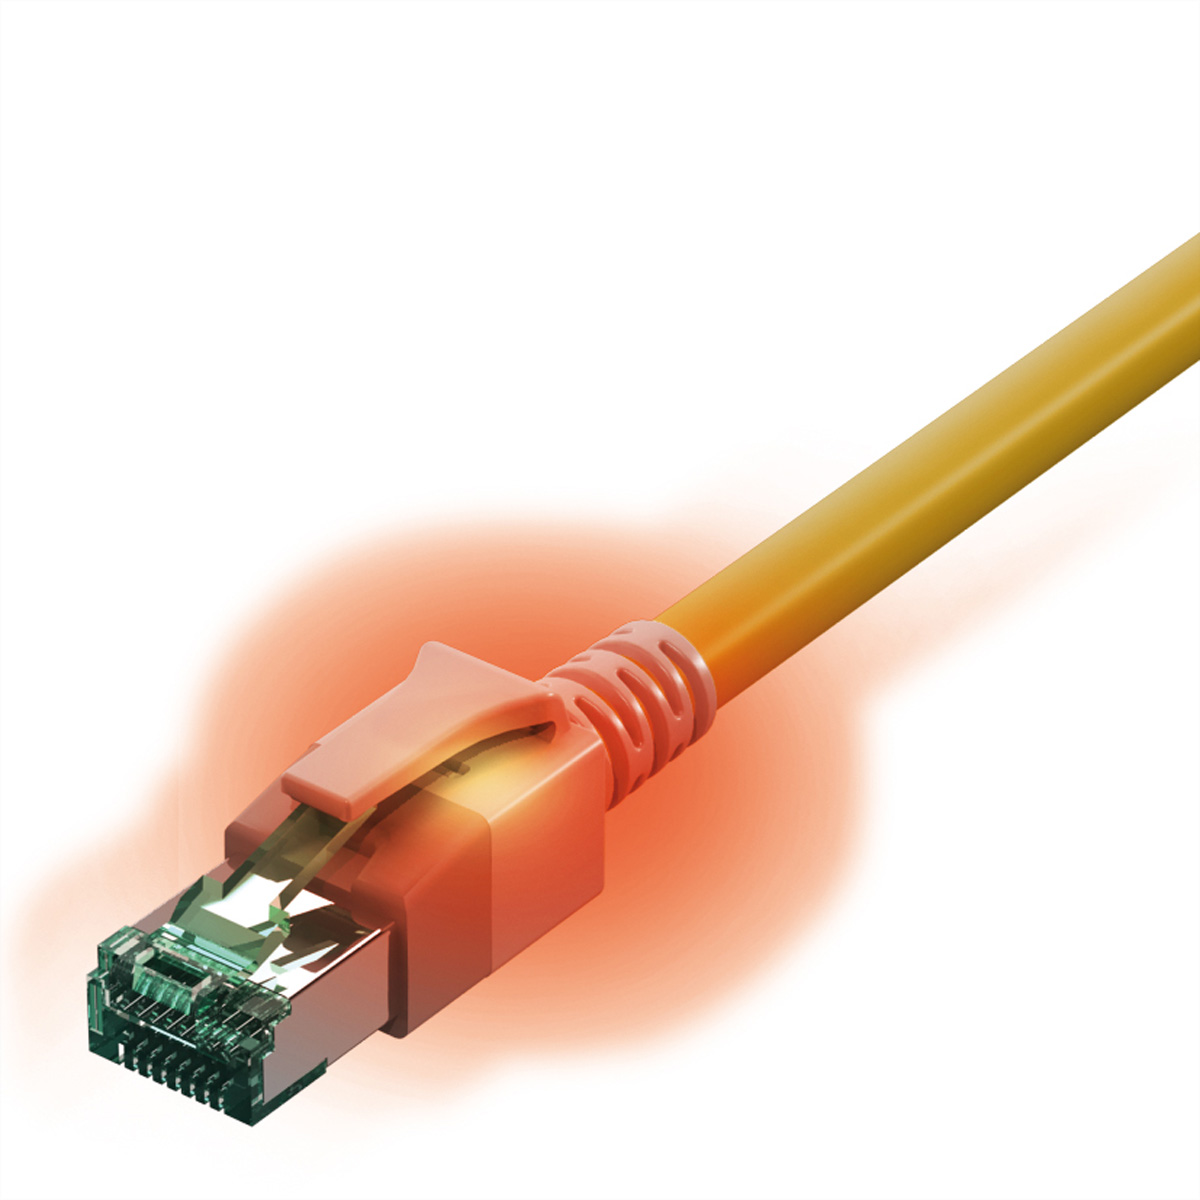 saCon S/FTP Patchkabel Kat.6A LSOH gelb 7.0m – Hochwertiges Verbindungskabel für zuverlässige Datenübertragung